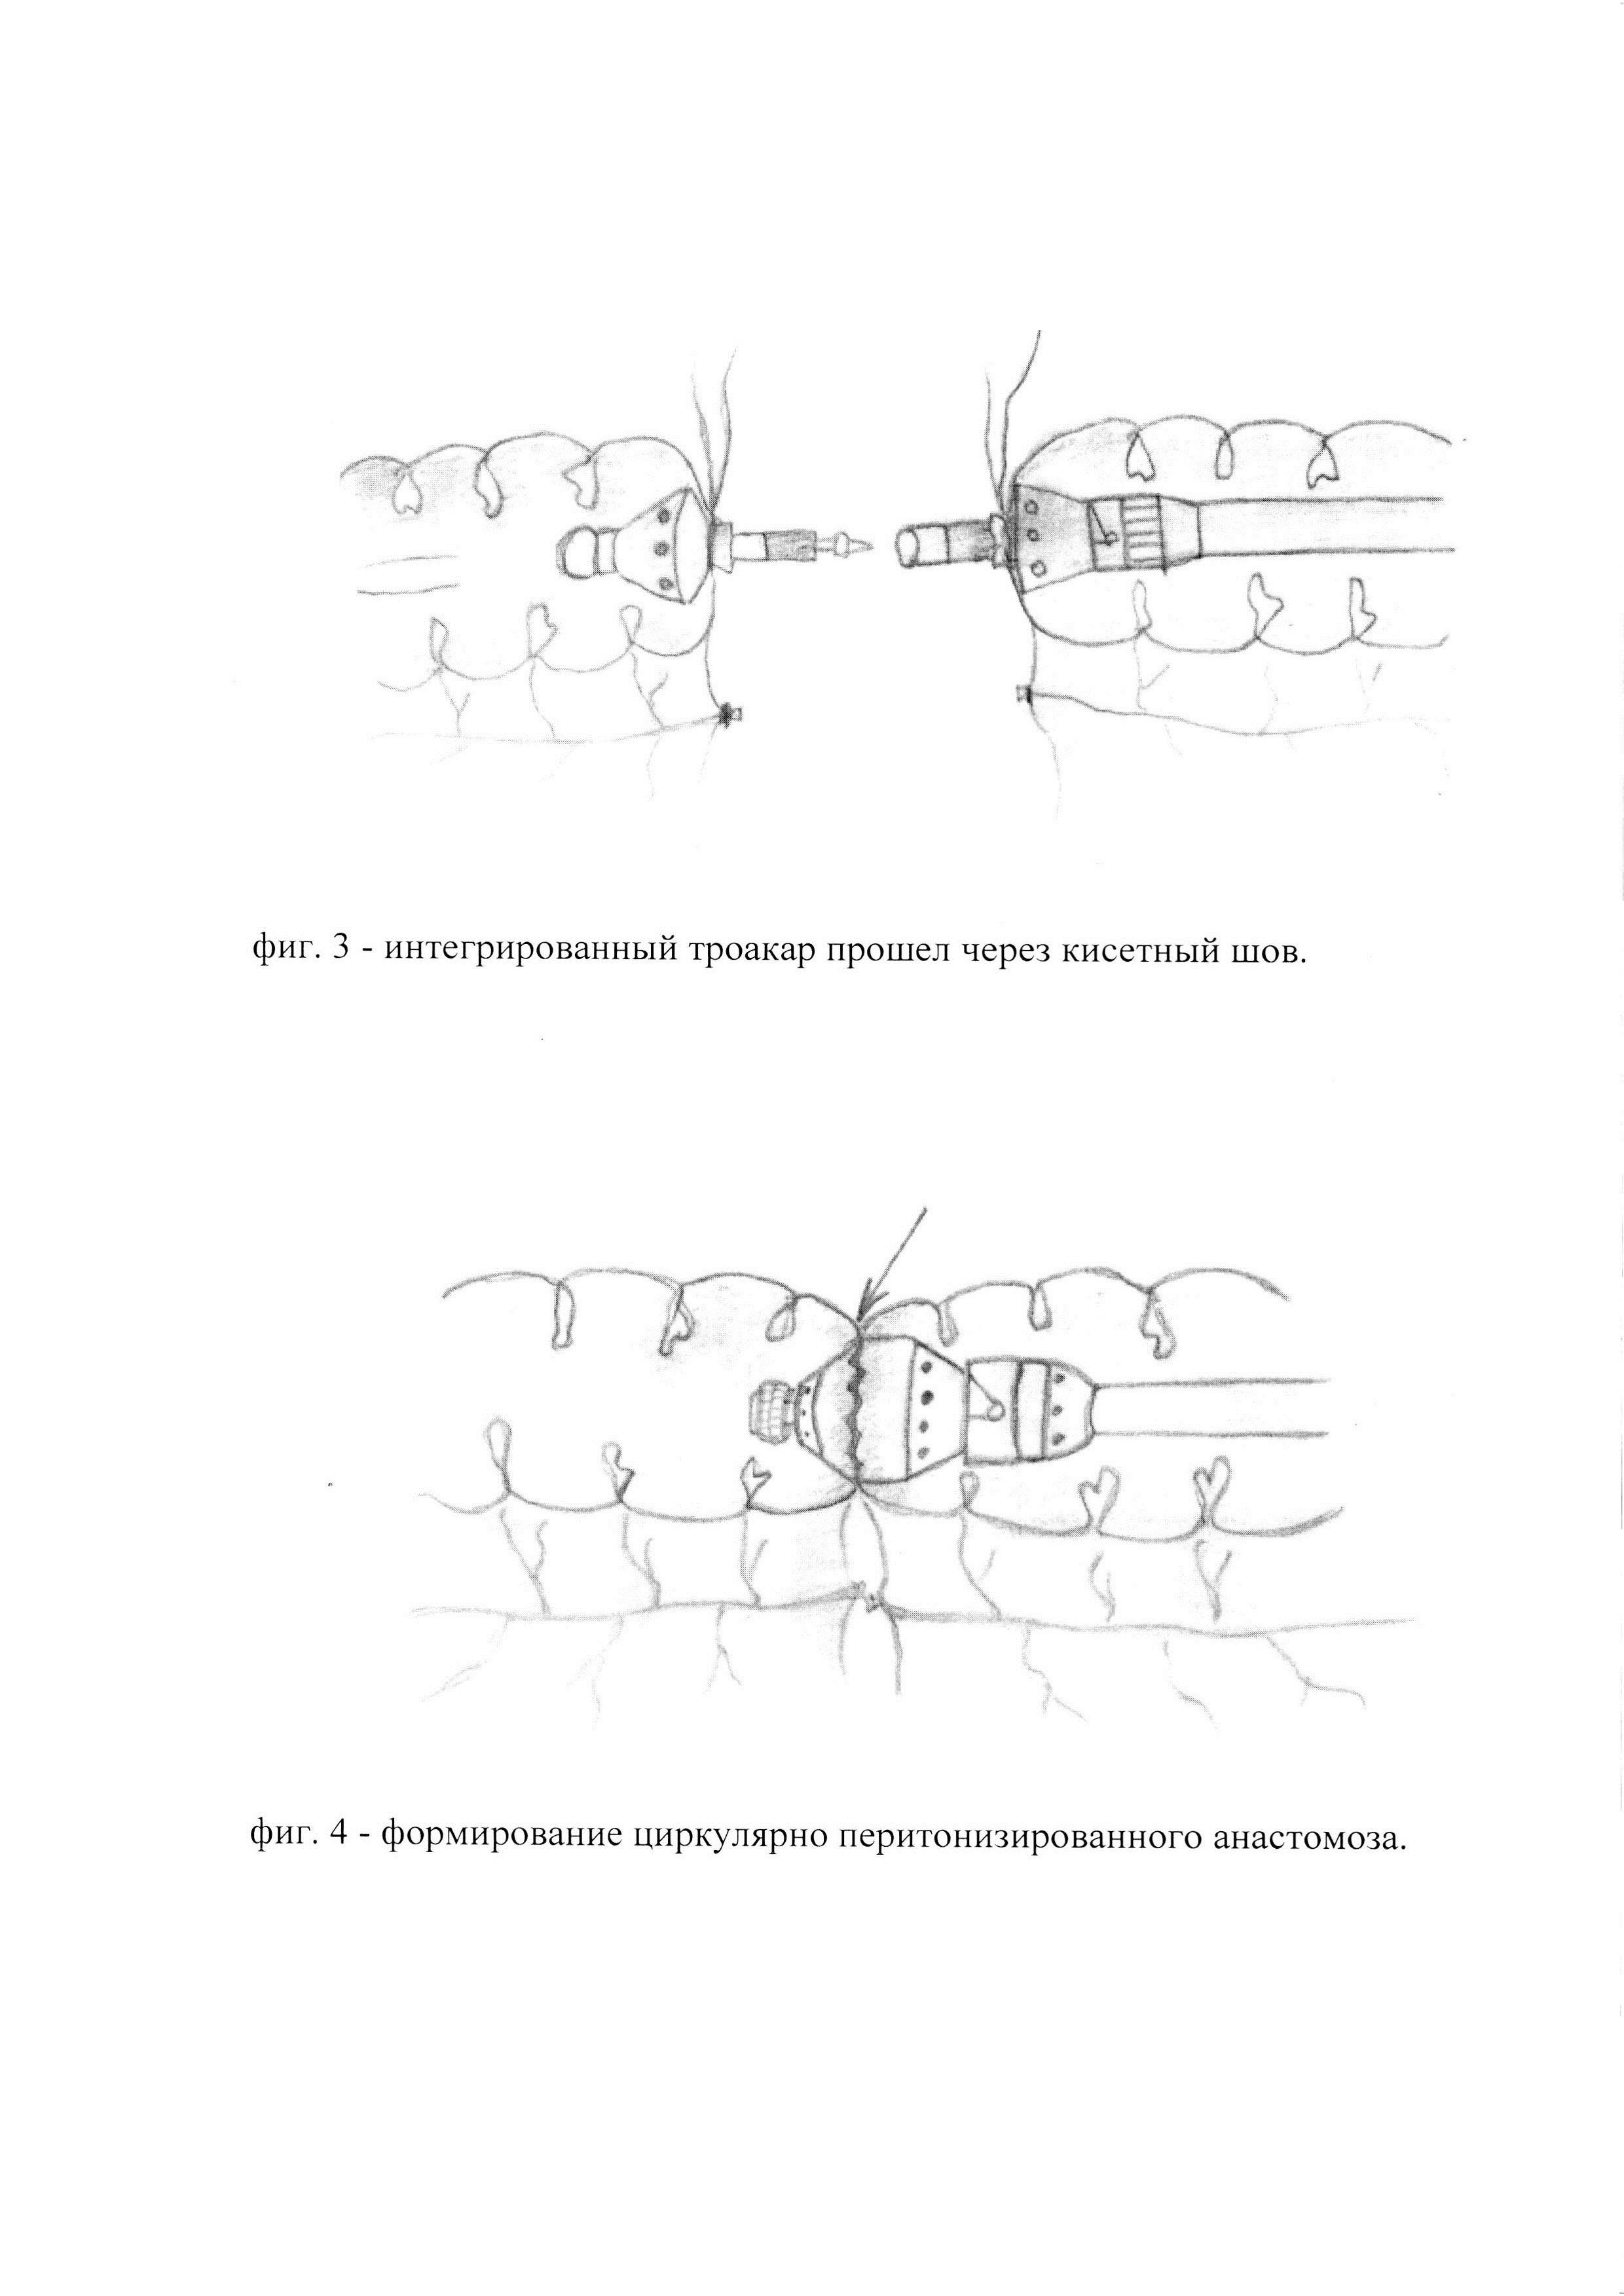 Способ формирования лапароскопического интракорпорального термино-терминального циркулярно-перитонизированного толстокишечного анастомоза